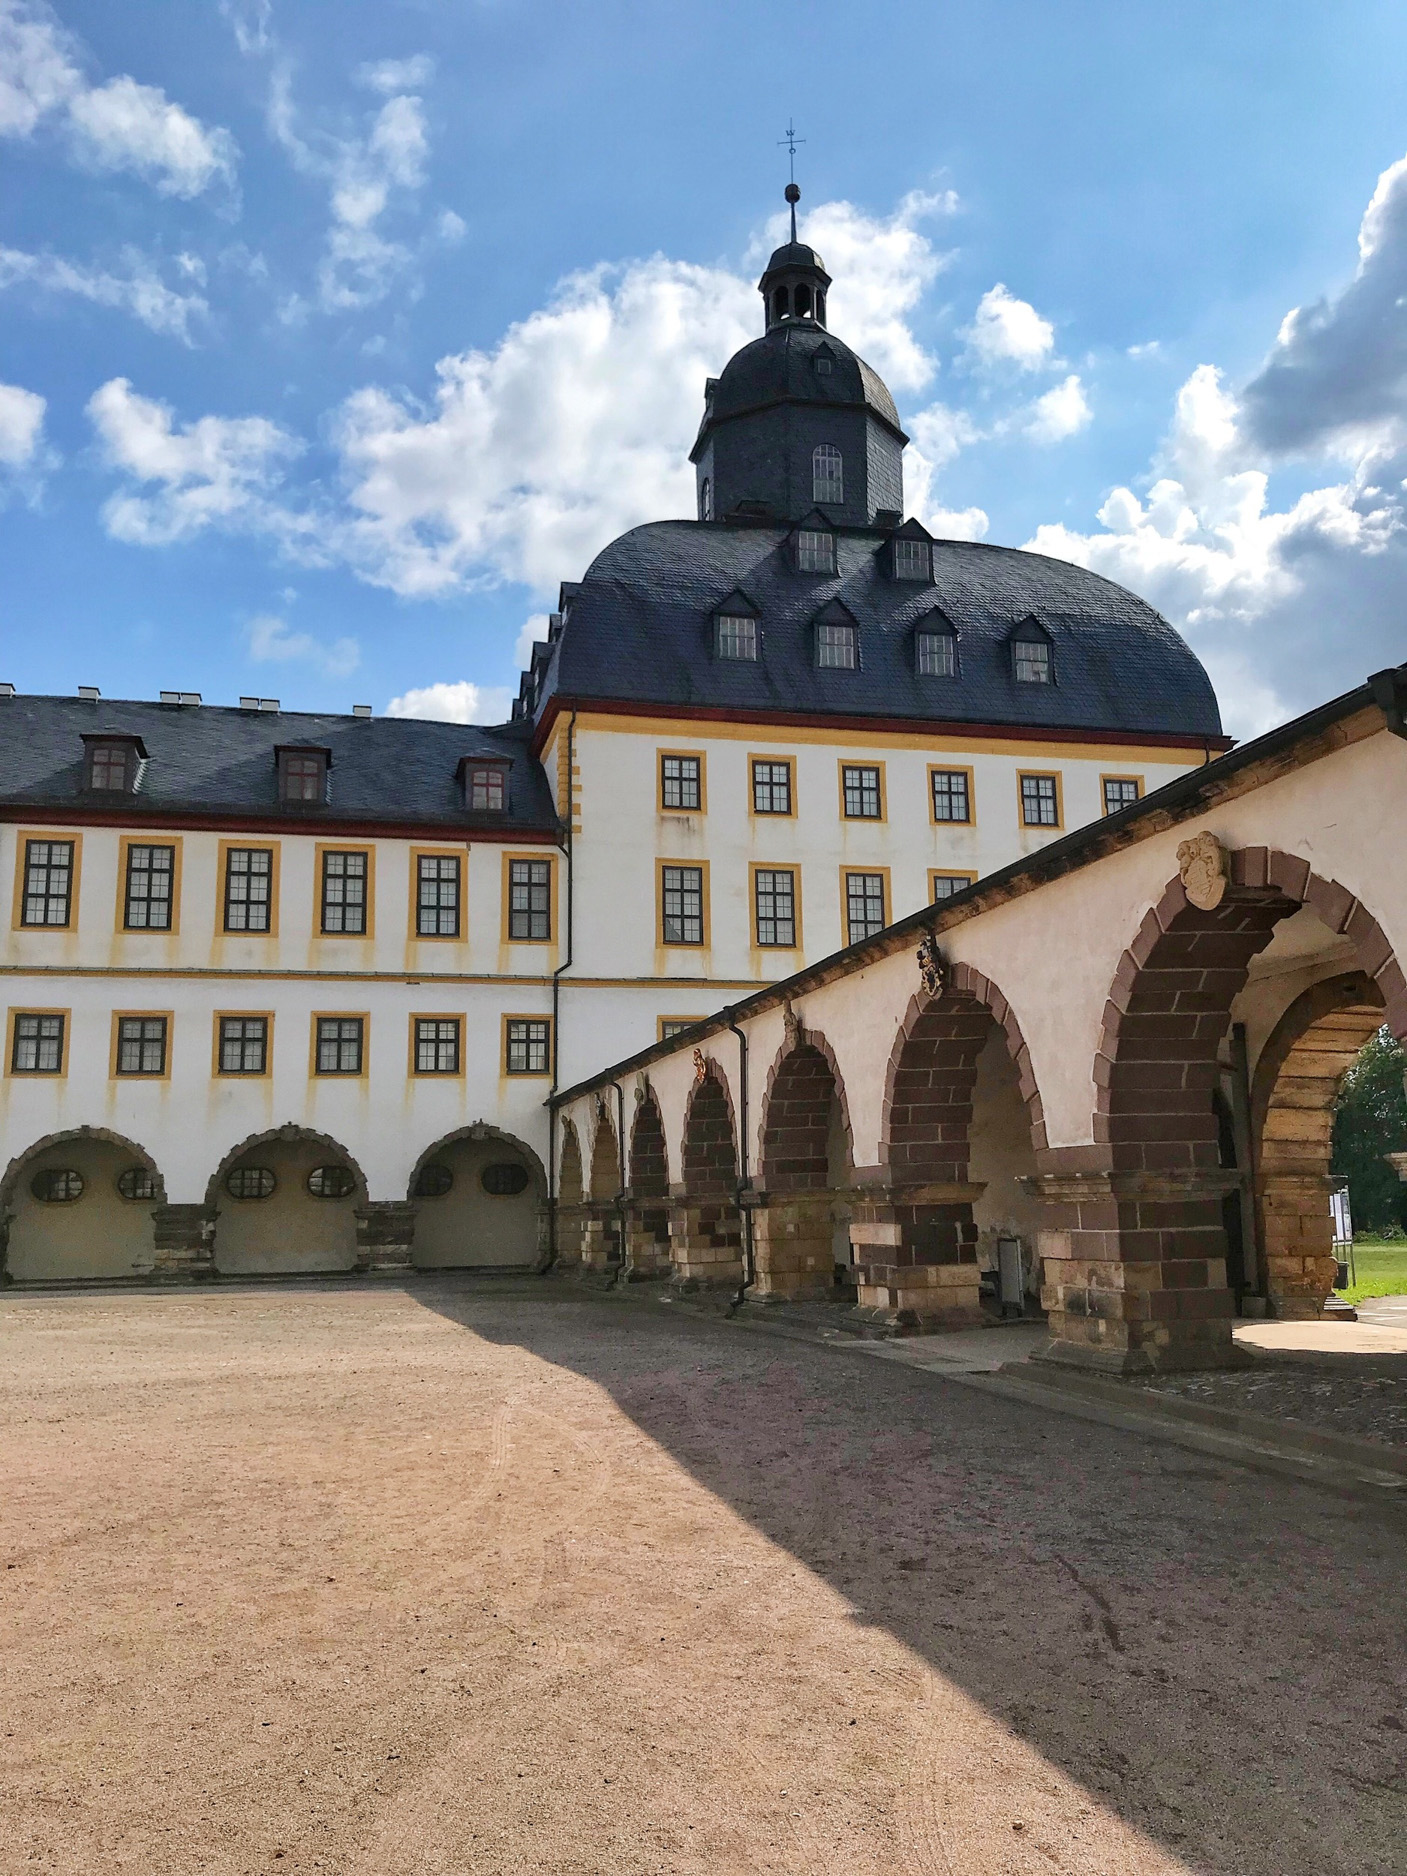 Schloss Friedenstein in Gotha, Germany